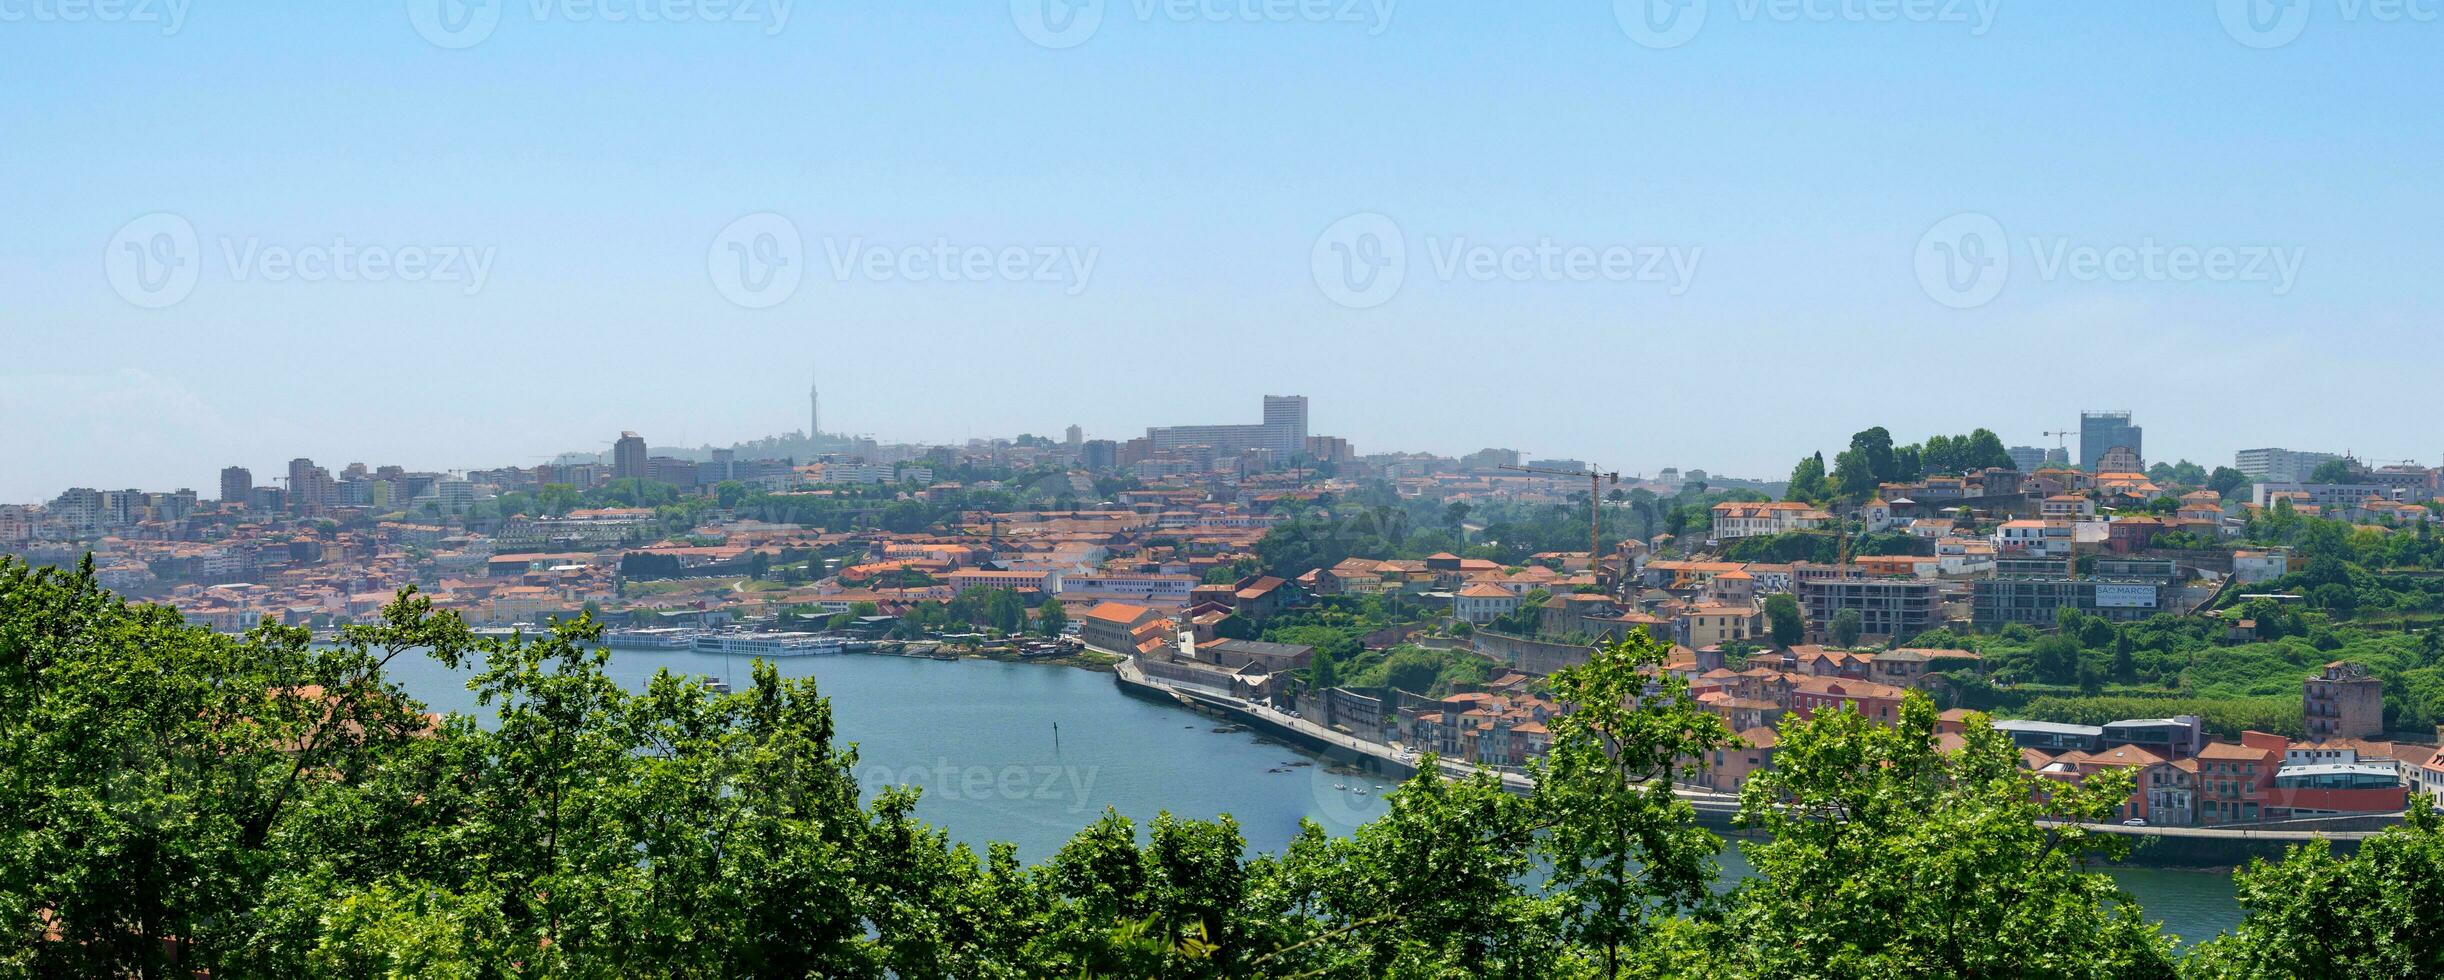 porto beroemd historisch stad, Portugal. architectuur van oud dorp. reizen naar ribeira en douro rivier. foto